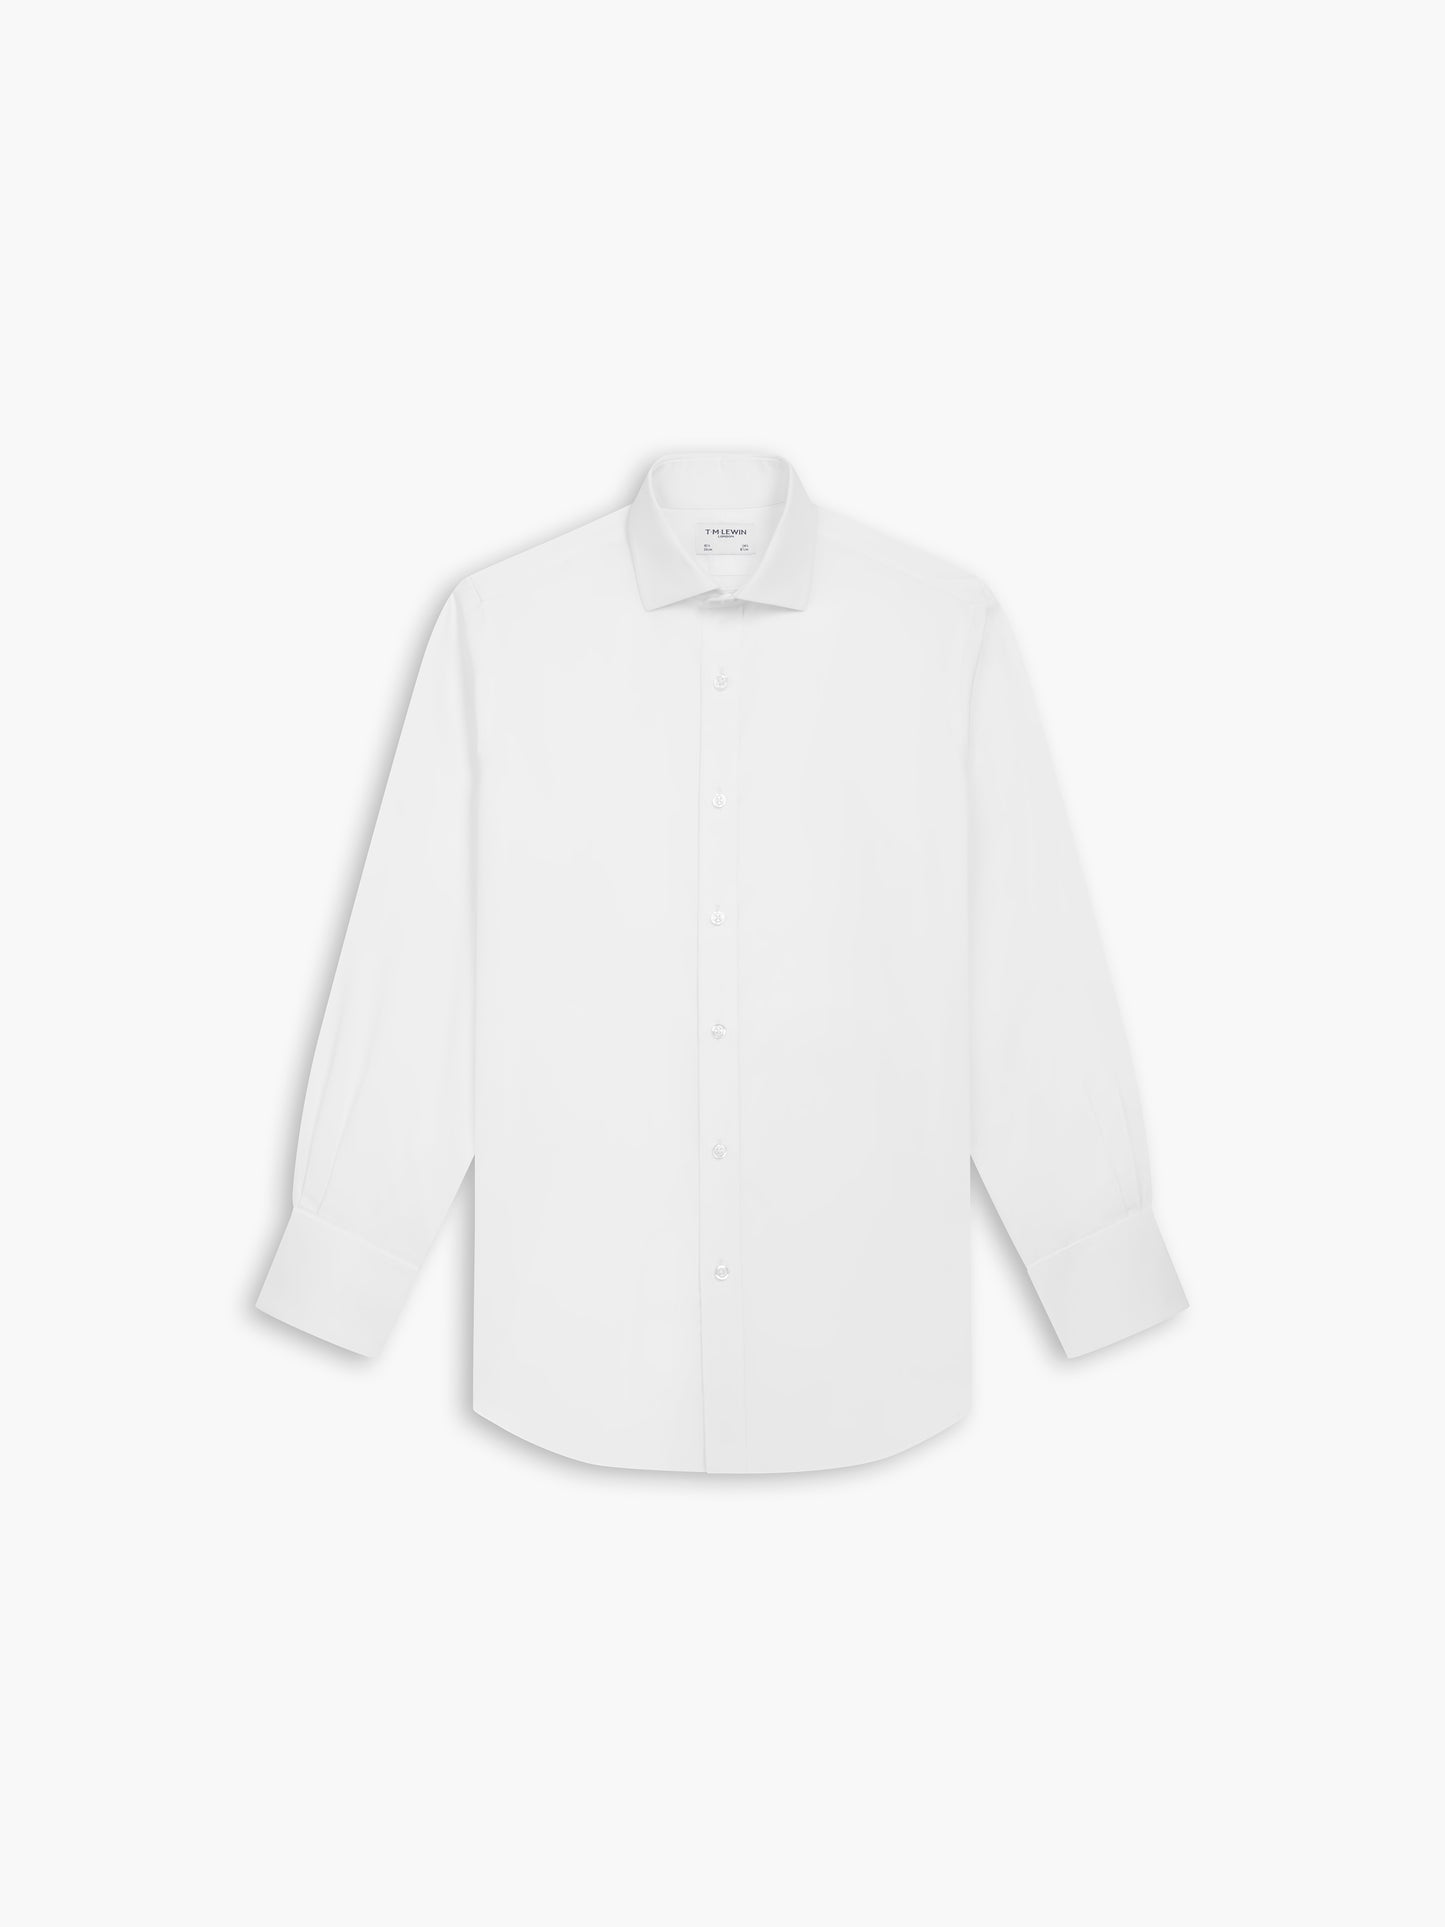 Non-Iron White Poplin Slim Fit Double Cuff Classic Collar Shirt